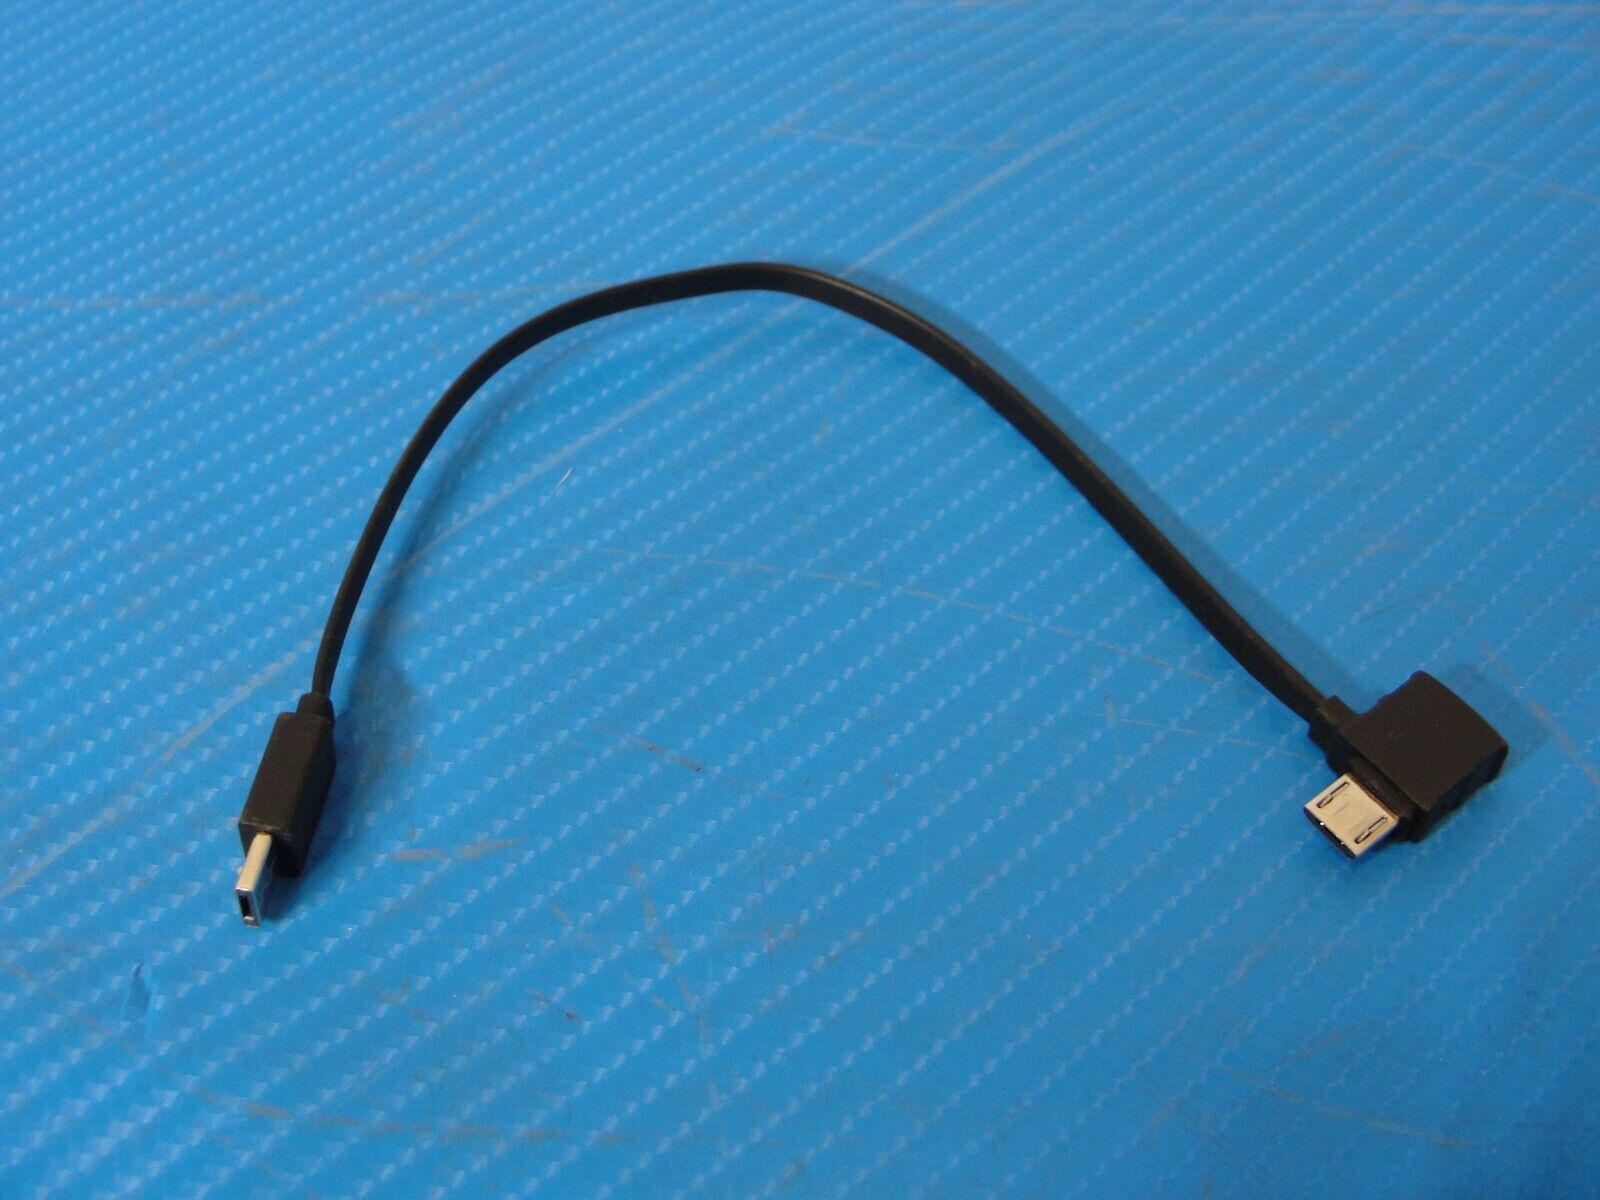 DJI Spark Drone Genuine Mini USB Remote Control Black Cable /#1